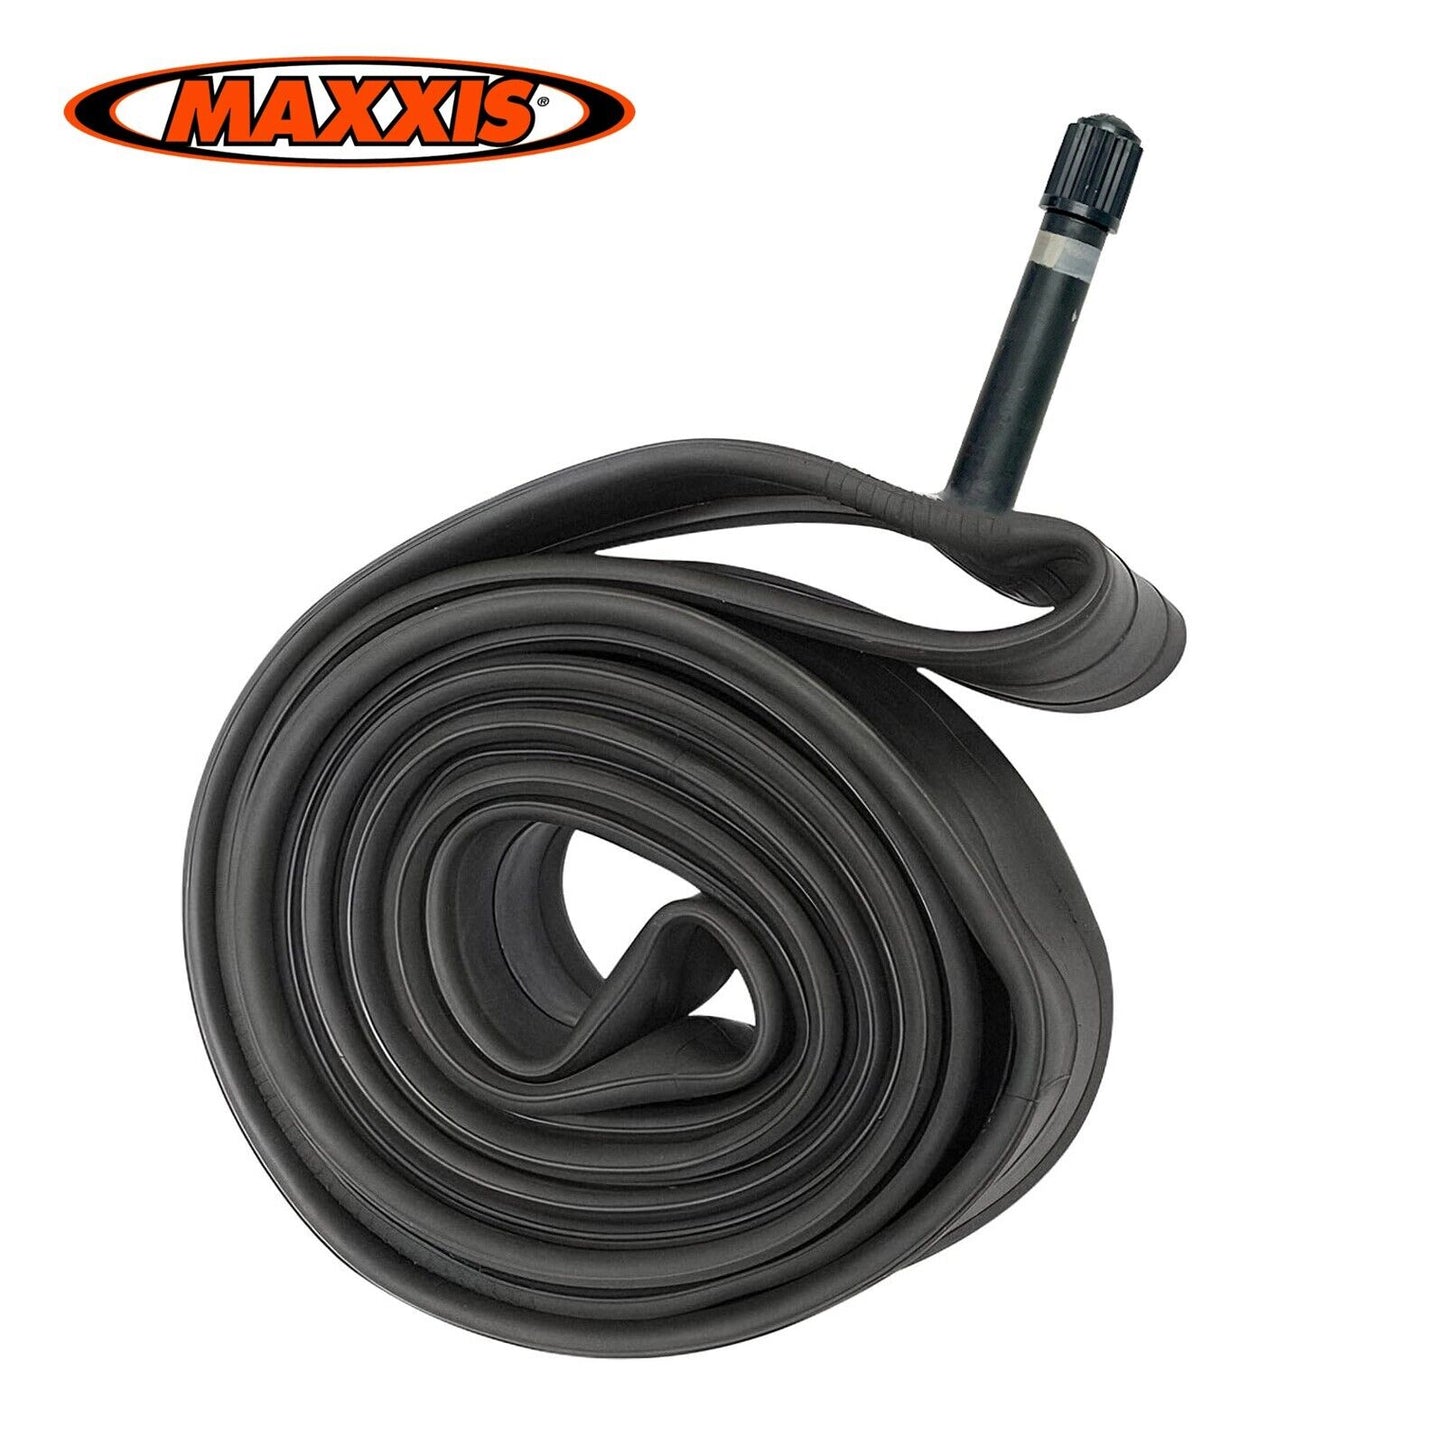 MAXXIS 27.5 x 1.75 - 2.40 Bike Tube 27.5" inch Inner Tubes Schrader Valve